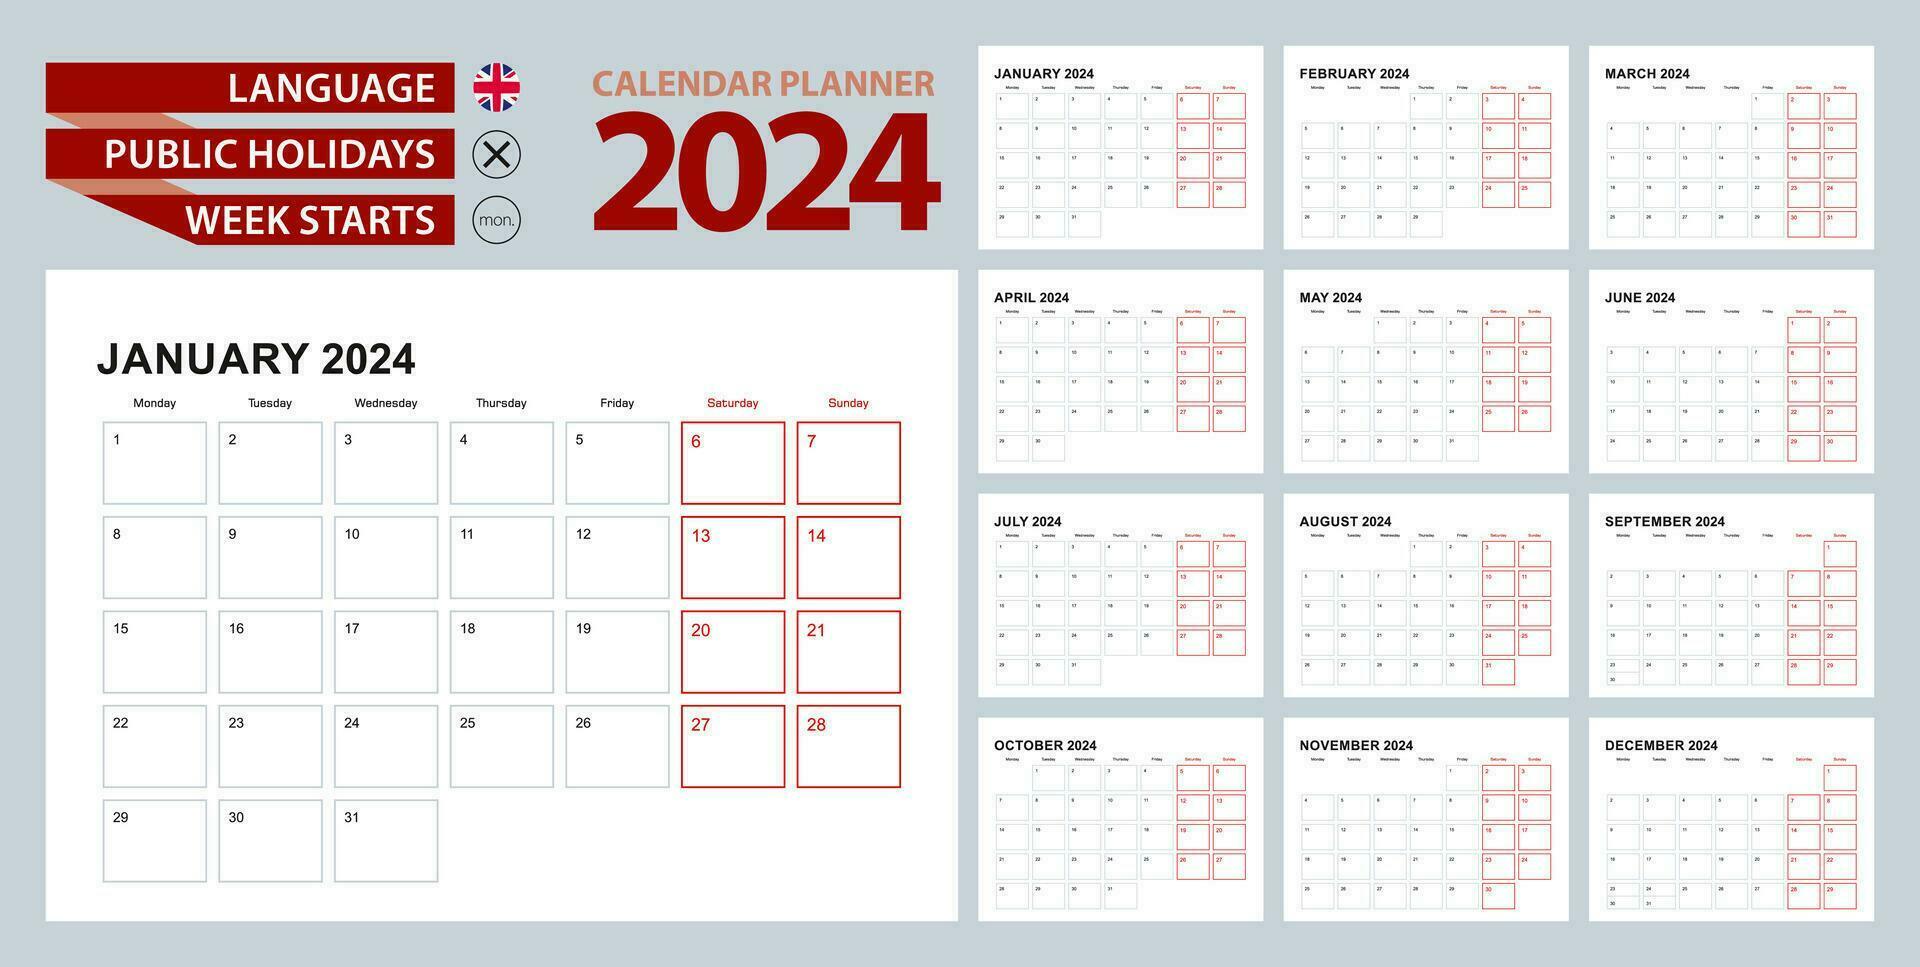 vägg kalender planerare 2024 i engelsk, vecka börjar i måndag. vektor planerare.